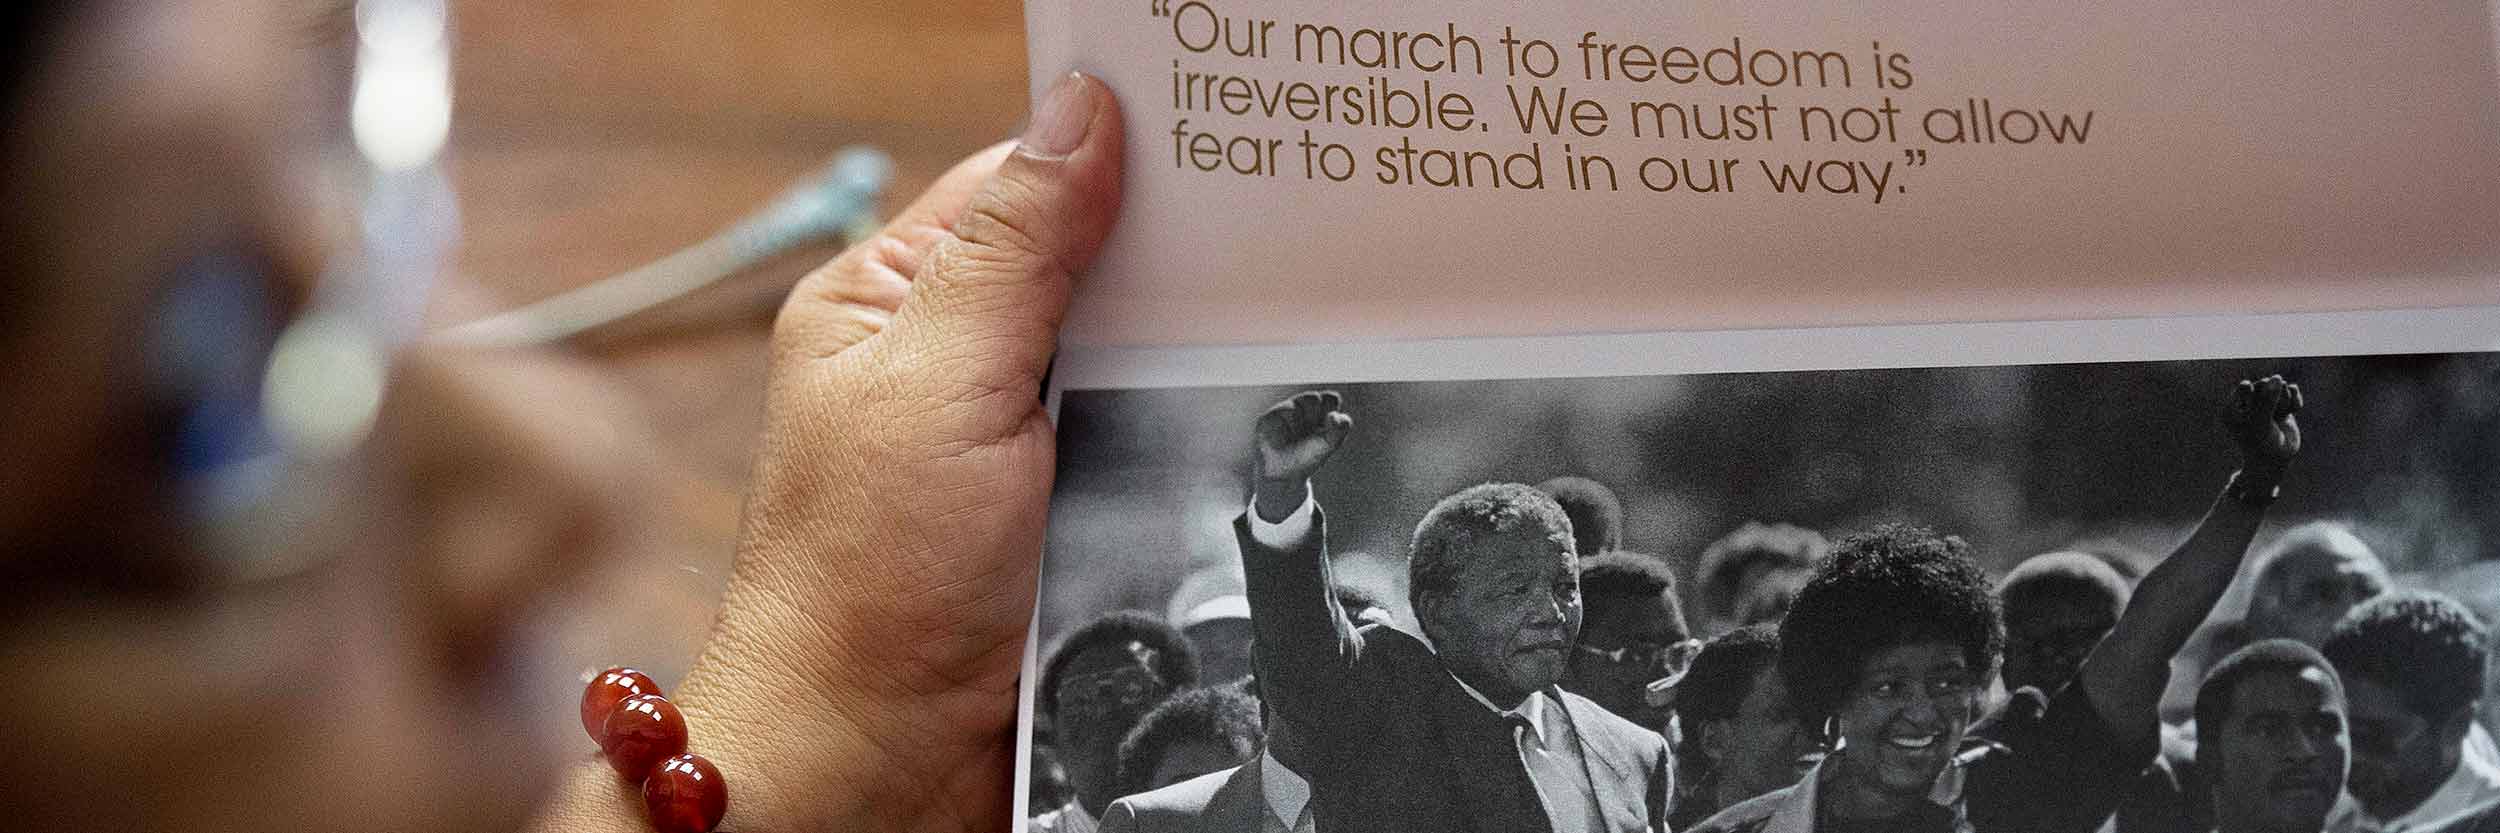 امرأة تحمل كتيبًا  عليه صورة نيلسون مانديلا ممسكًا بيد زوجه وهما محاطات بجمع غفير  